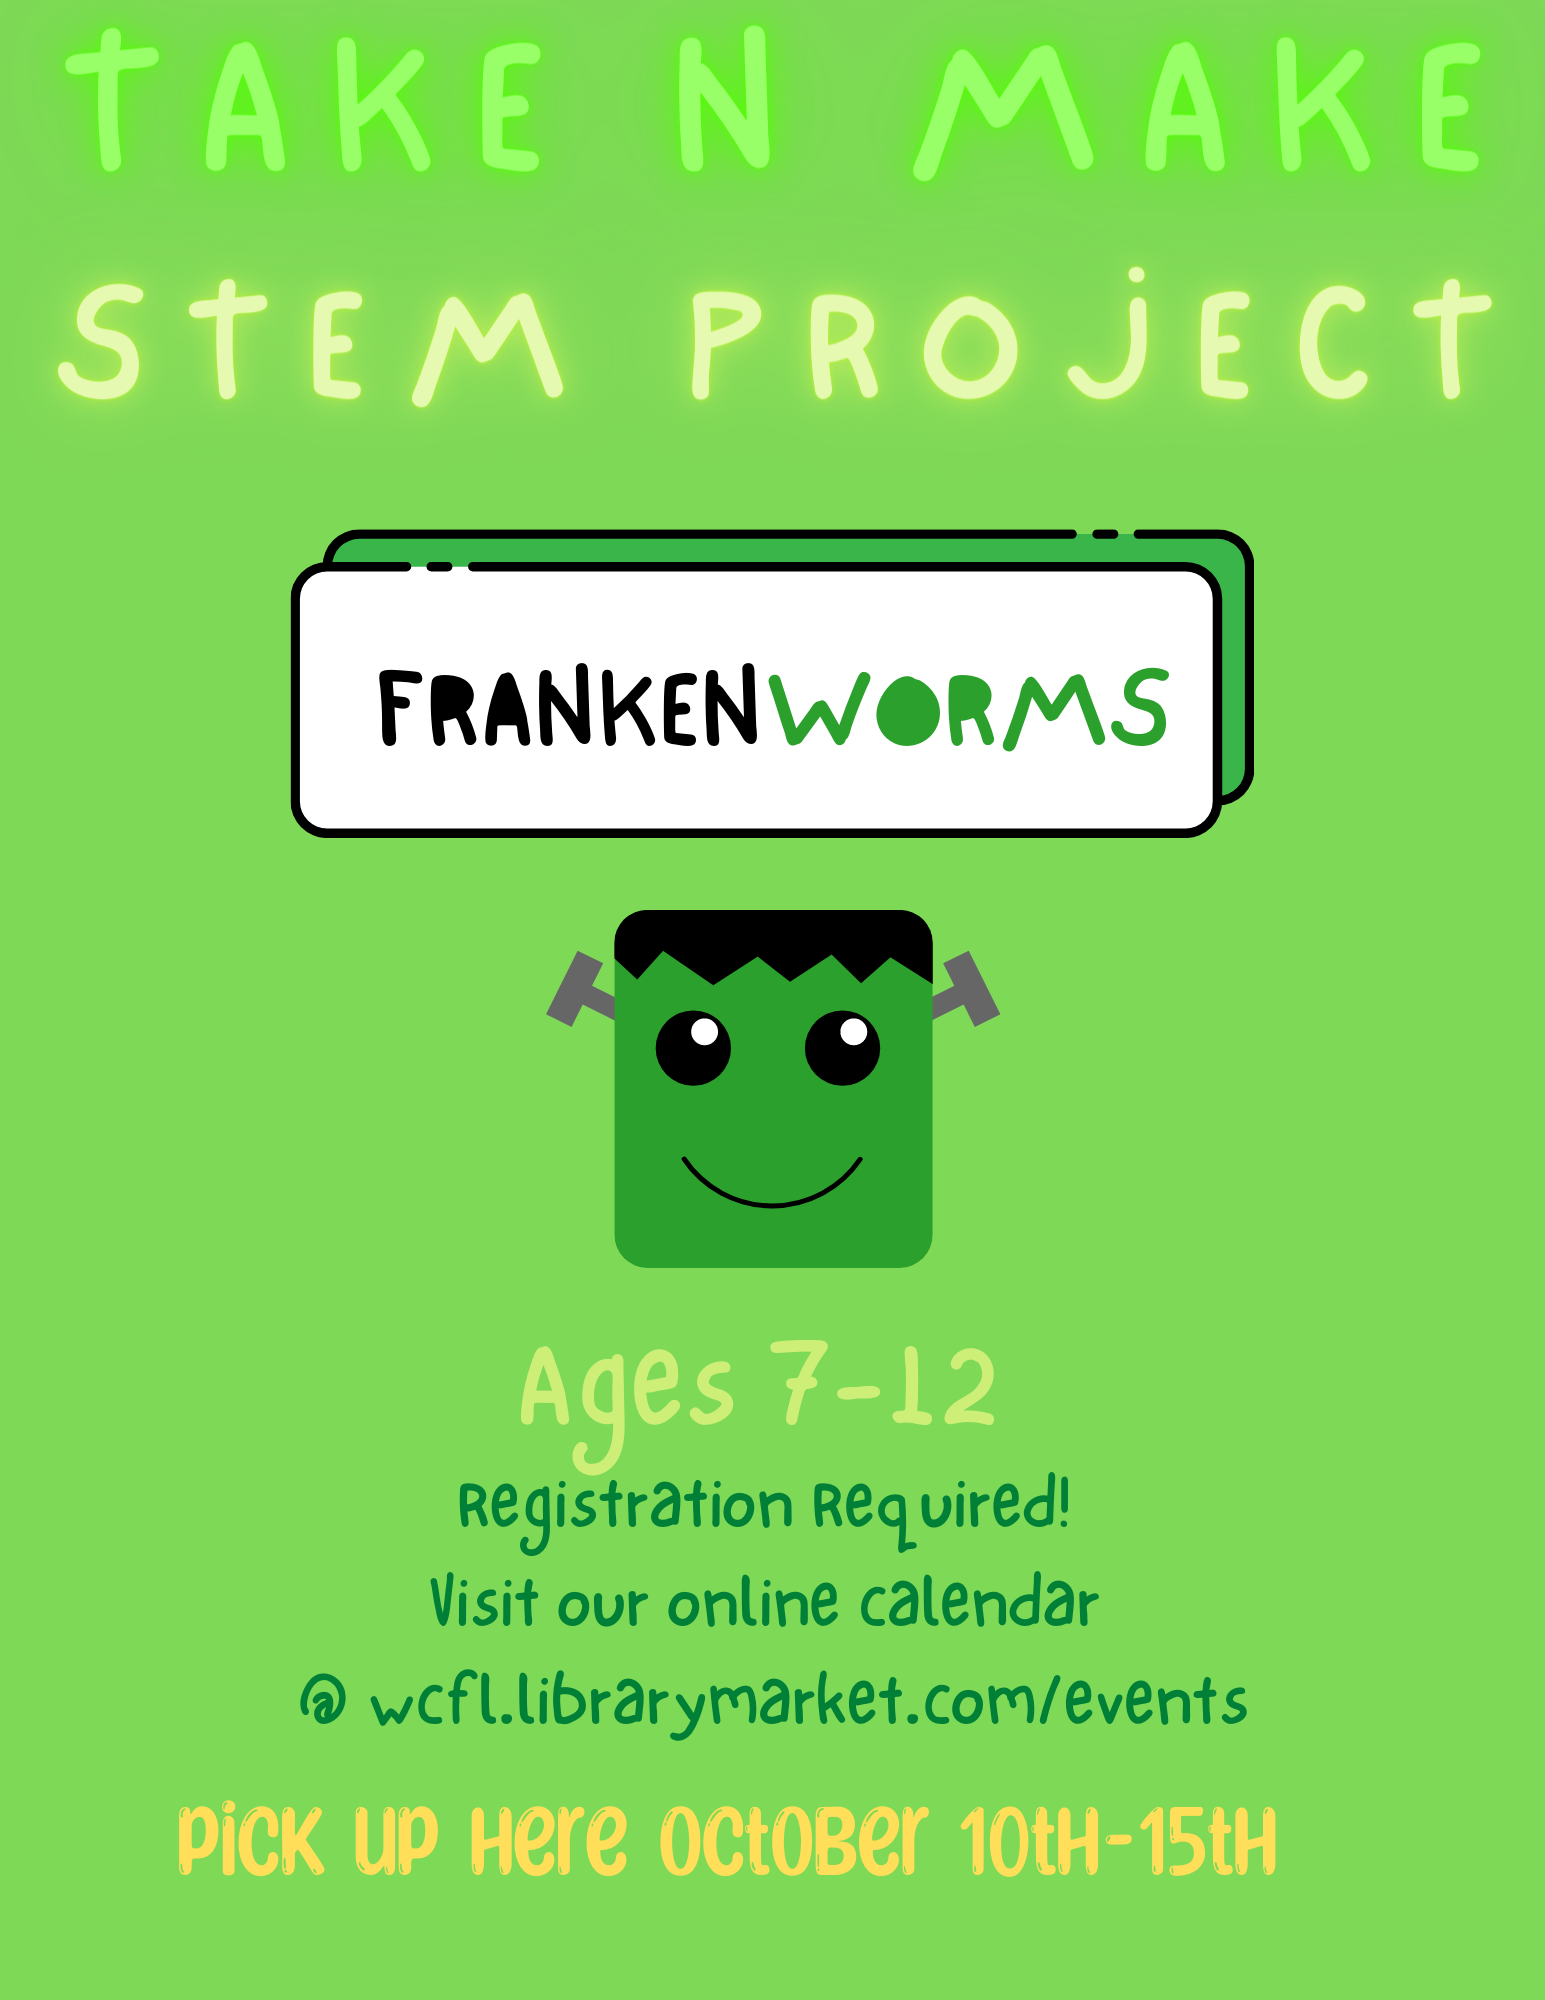 Take N Make Frankenworms!